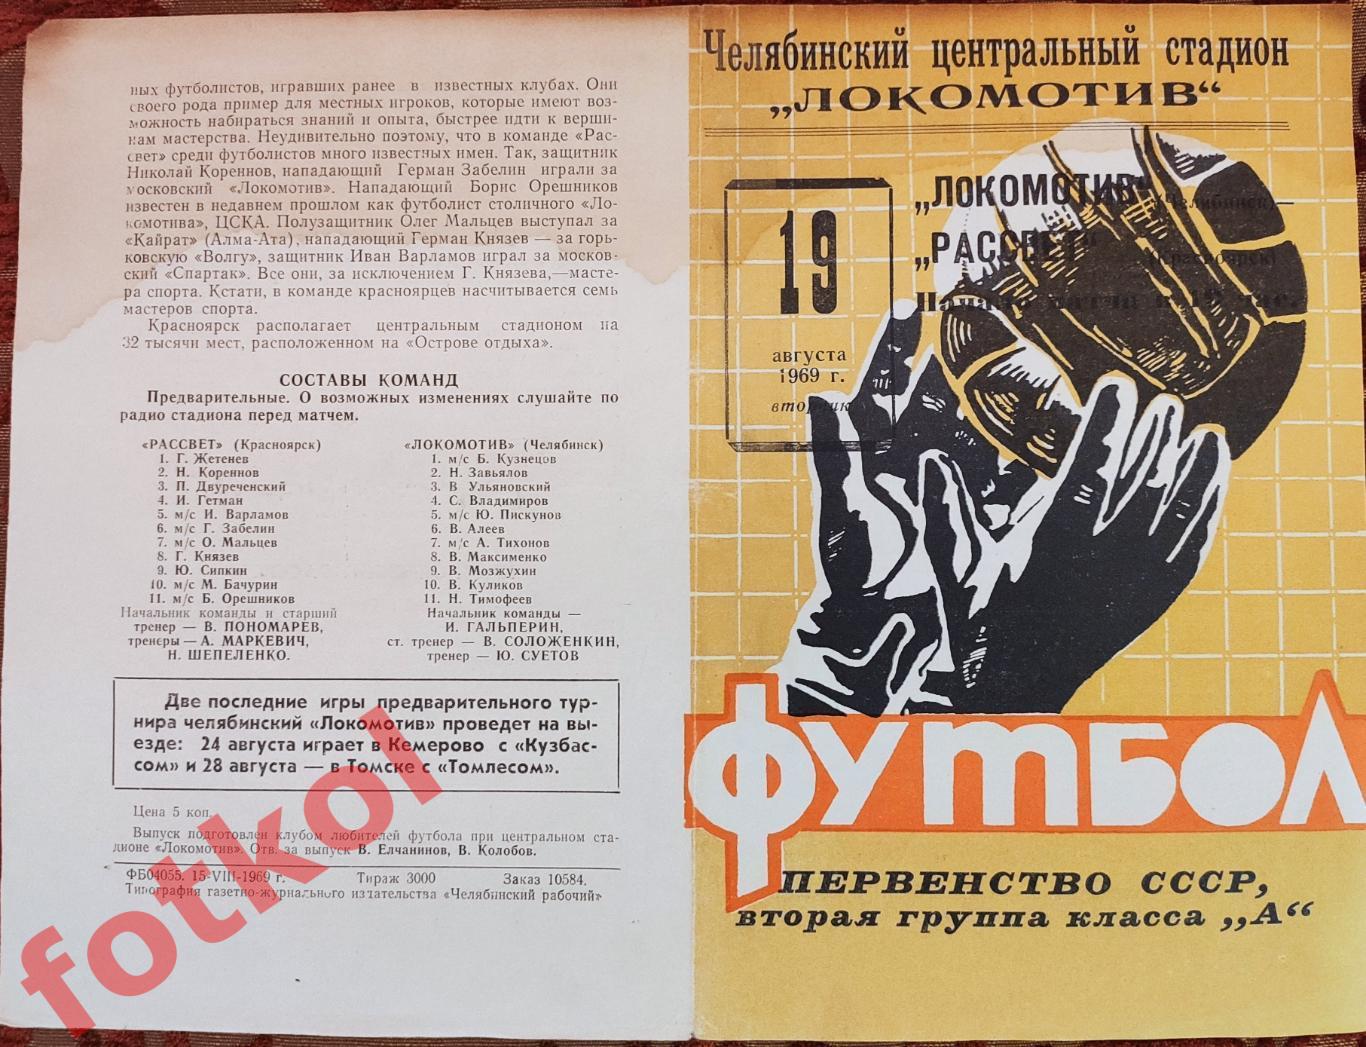 ЛОКОМОТИВ Челябинск - РАССВЕТ Красноярск 19.08.1969